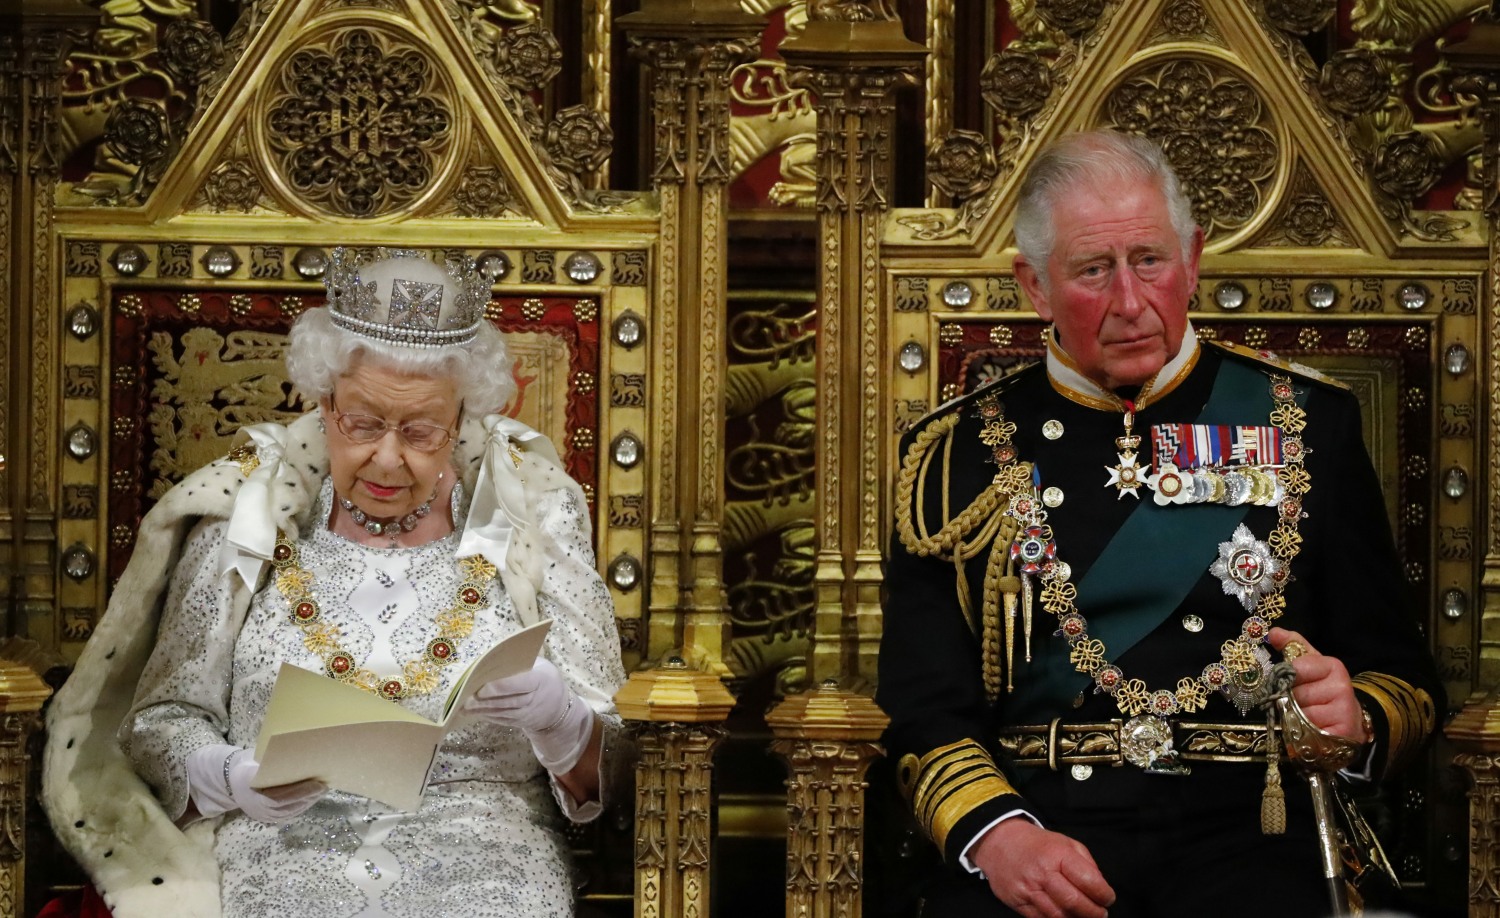 kaltak | Kraliçe Elizabeth, hareketlilik sorunları nedeniyle Parlamentonun eyalet açılışını kaçırdı